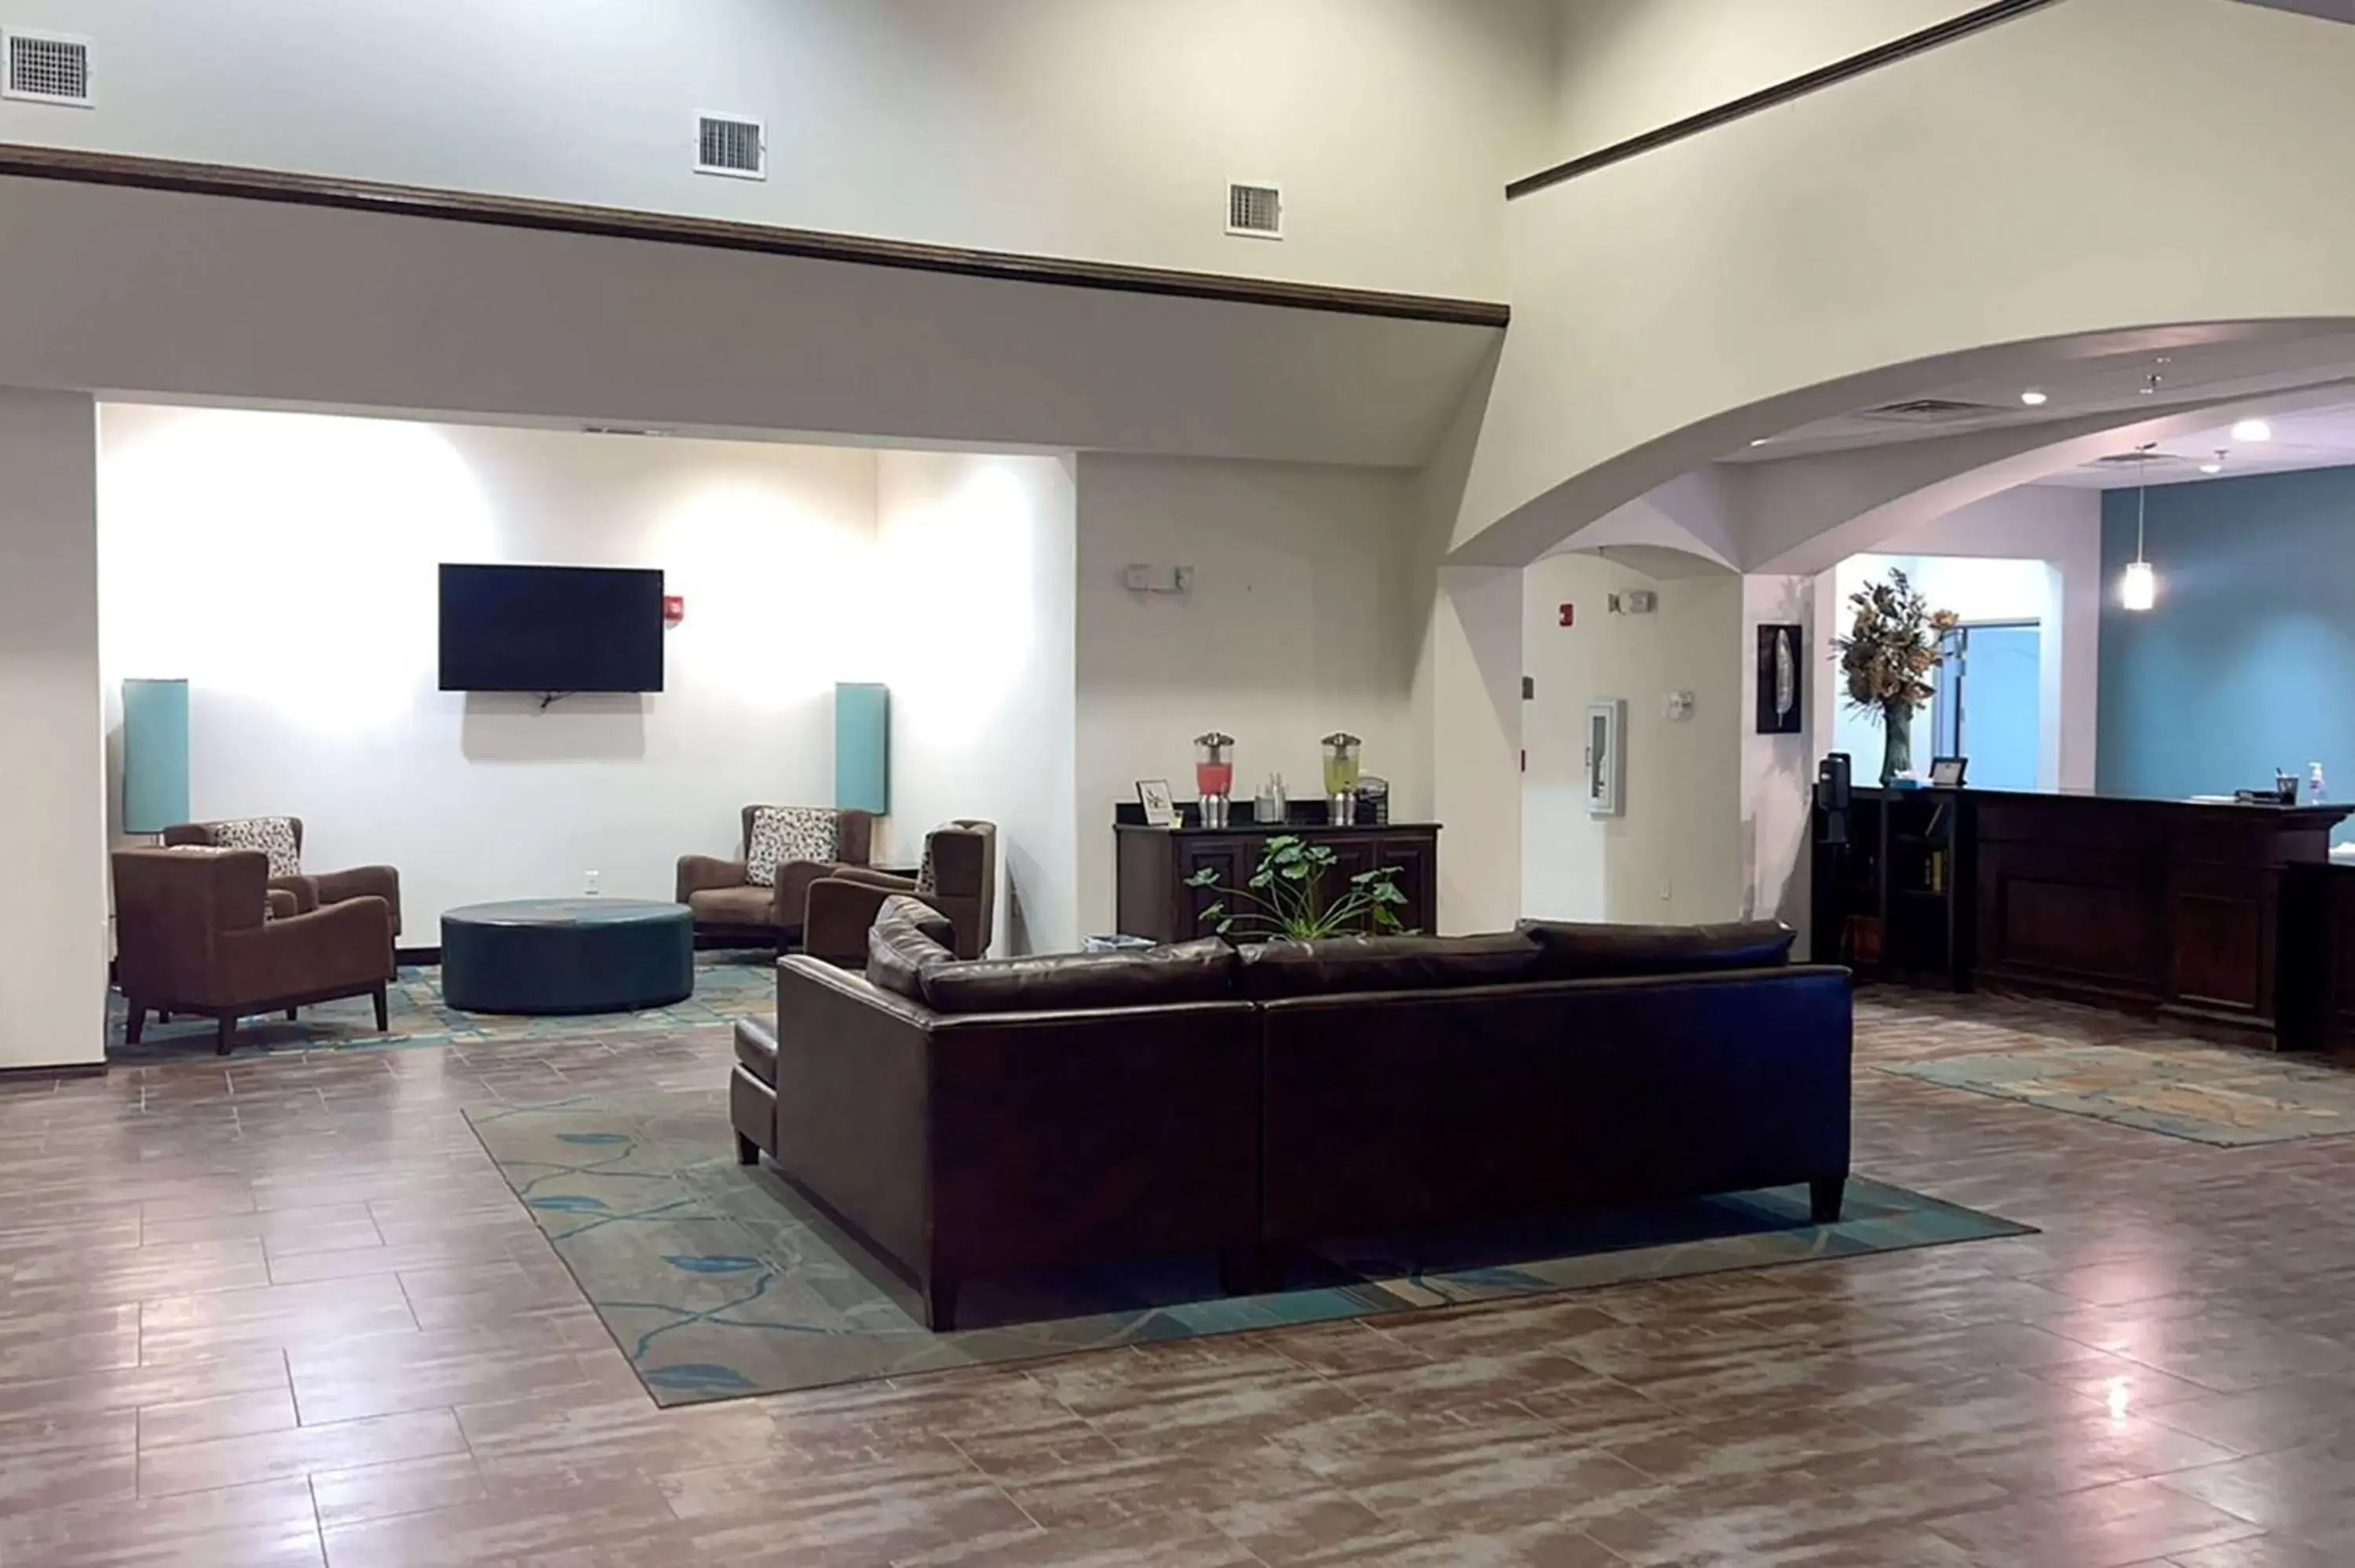 Lobby or reception, Lobby/Reception in Baymont by Wyndham Andrews TX